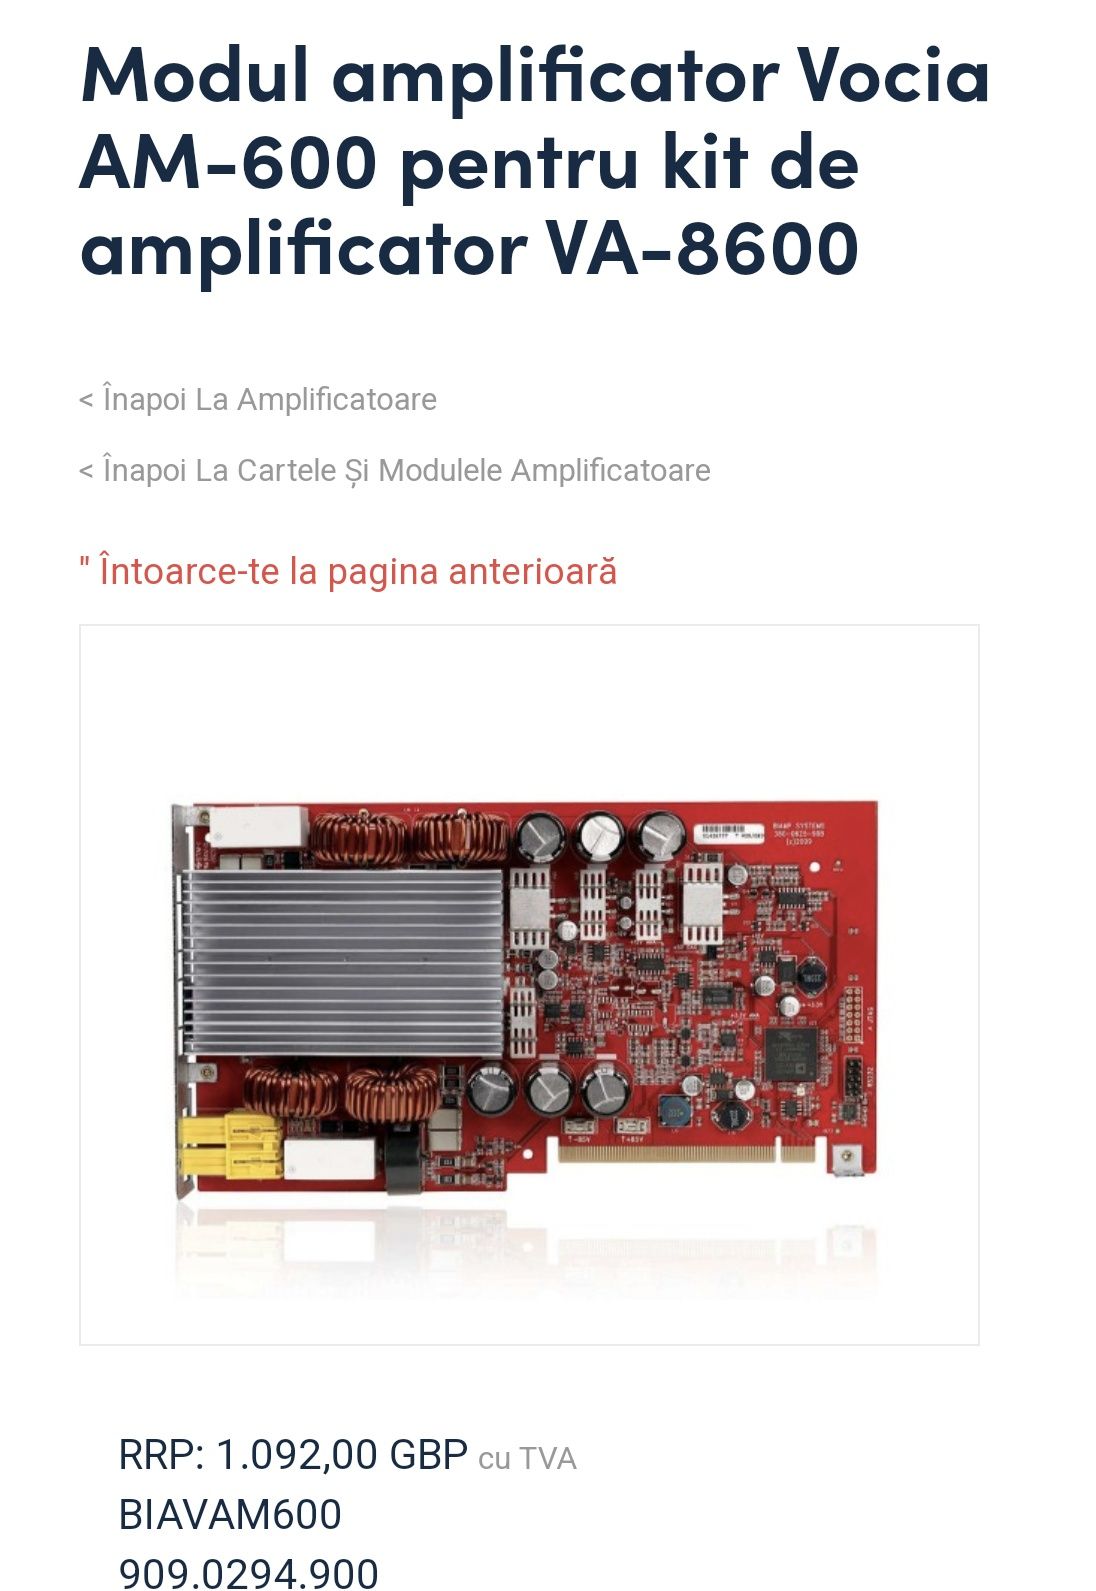 Modul amplificator pentru amplificatorul VA-8600